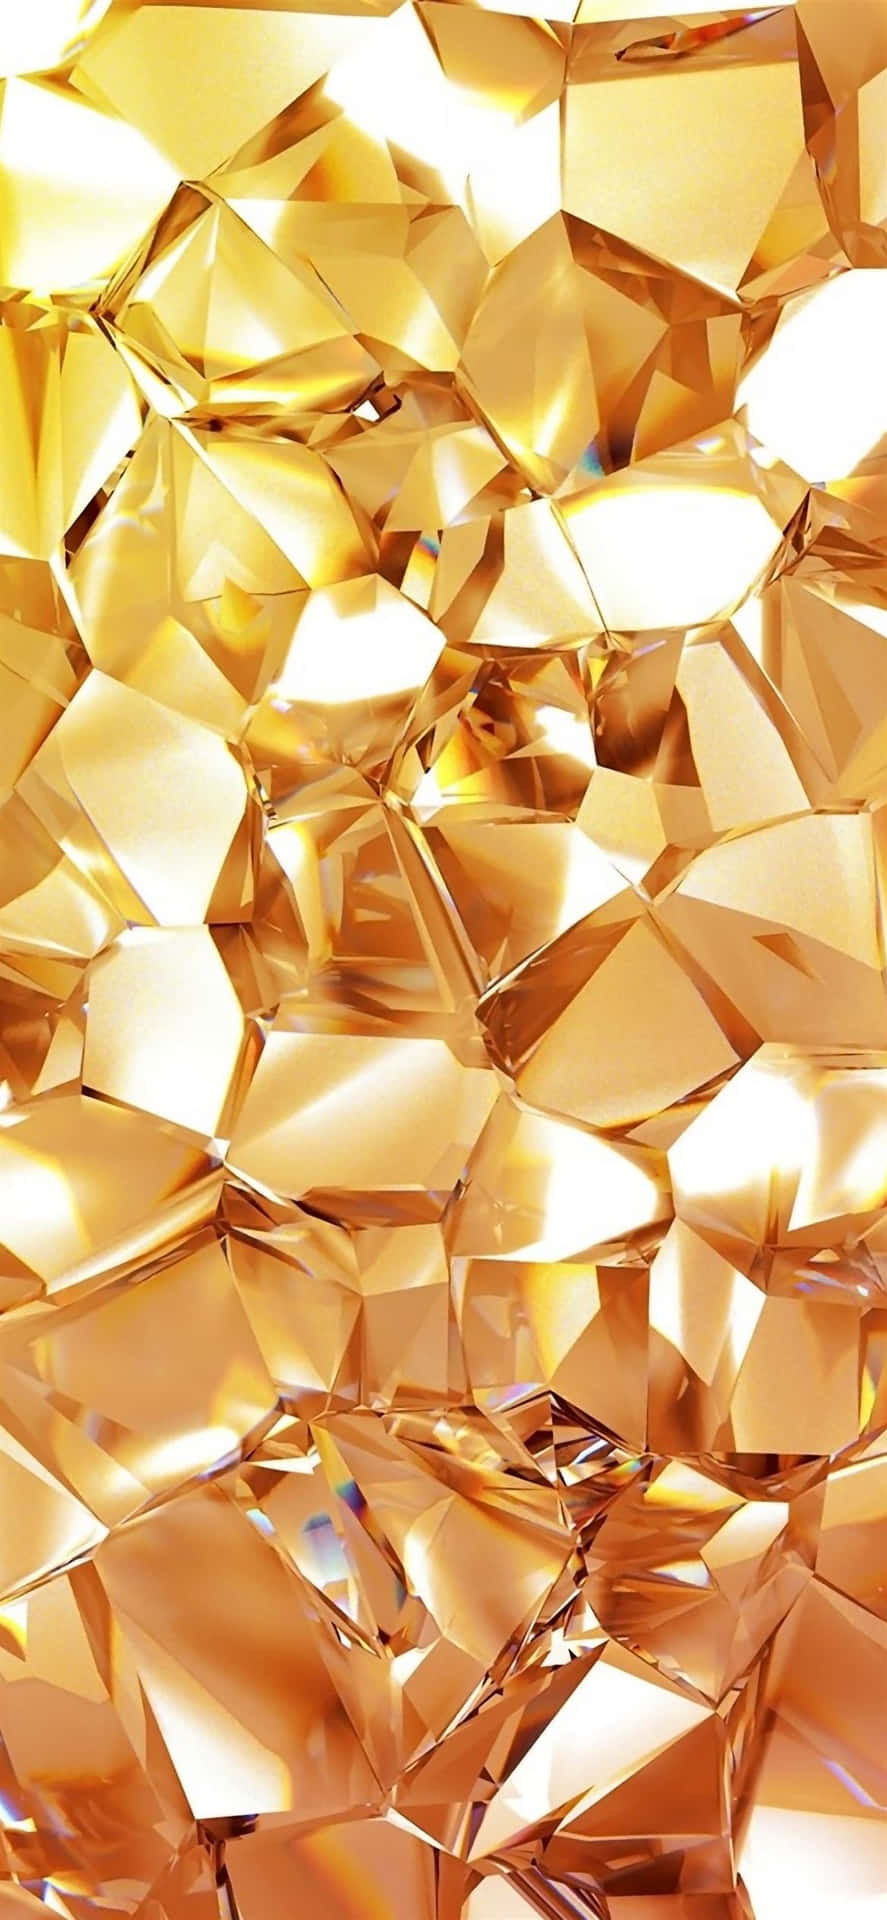 Gold Diamond Aesthetic Wallpaper